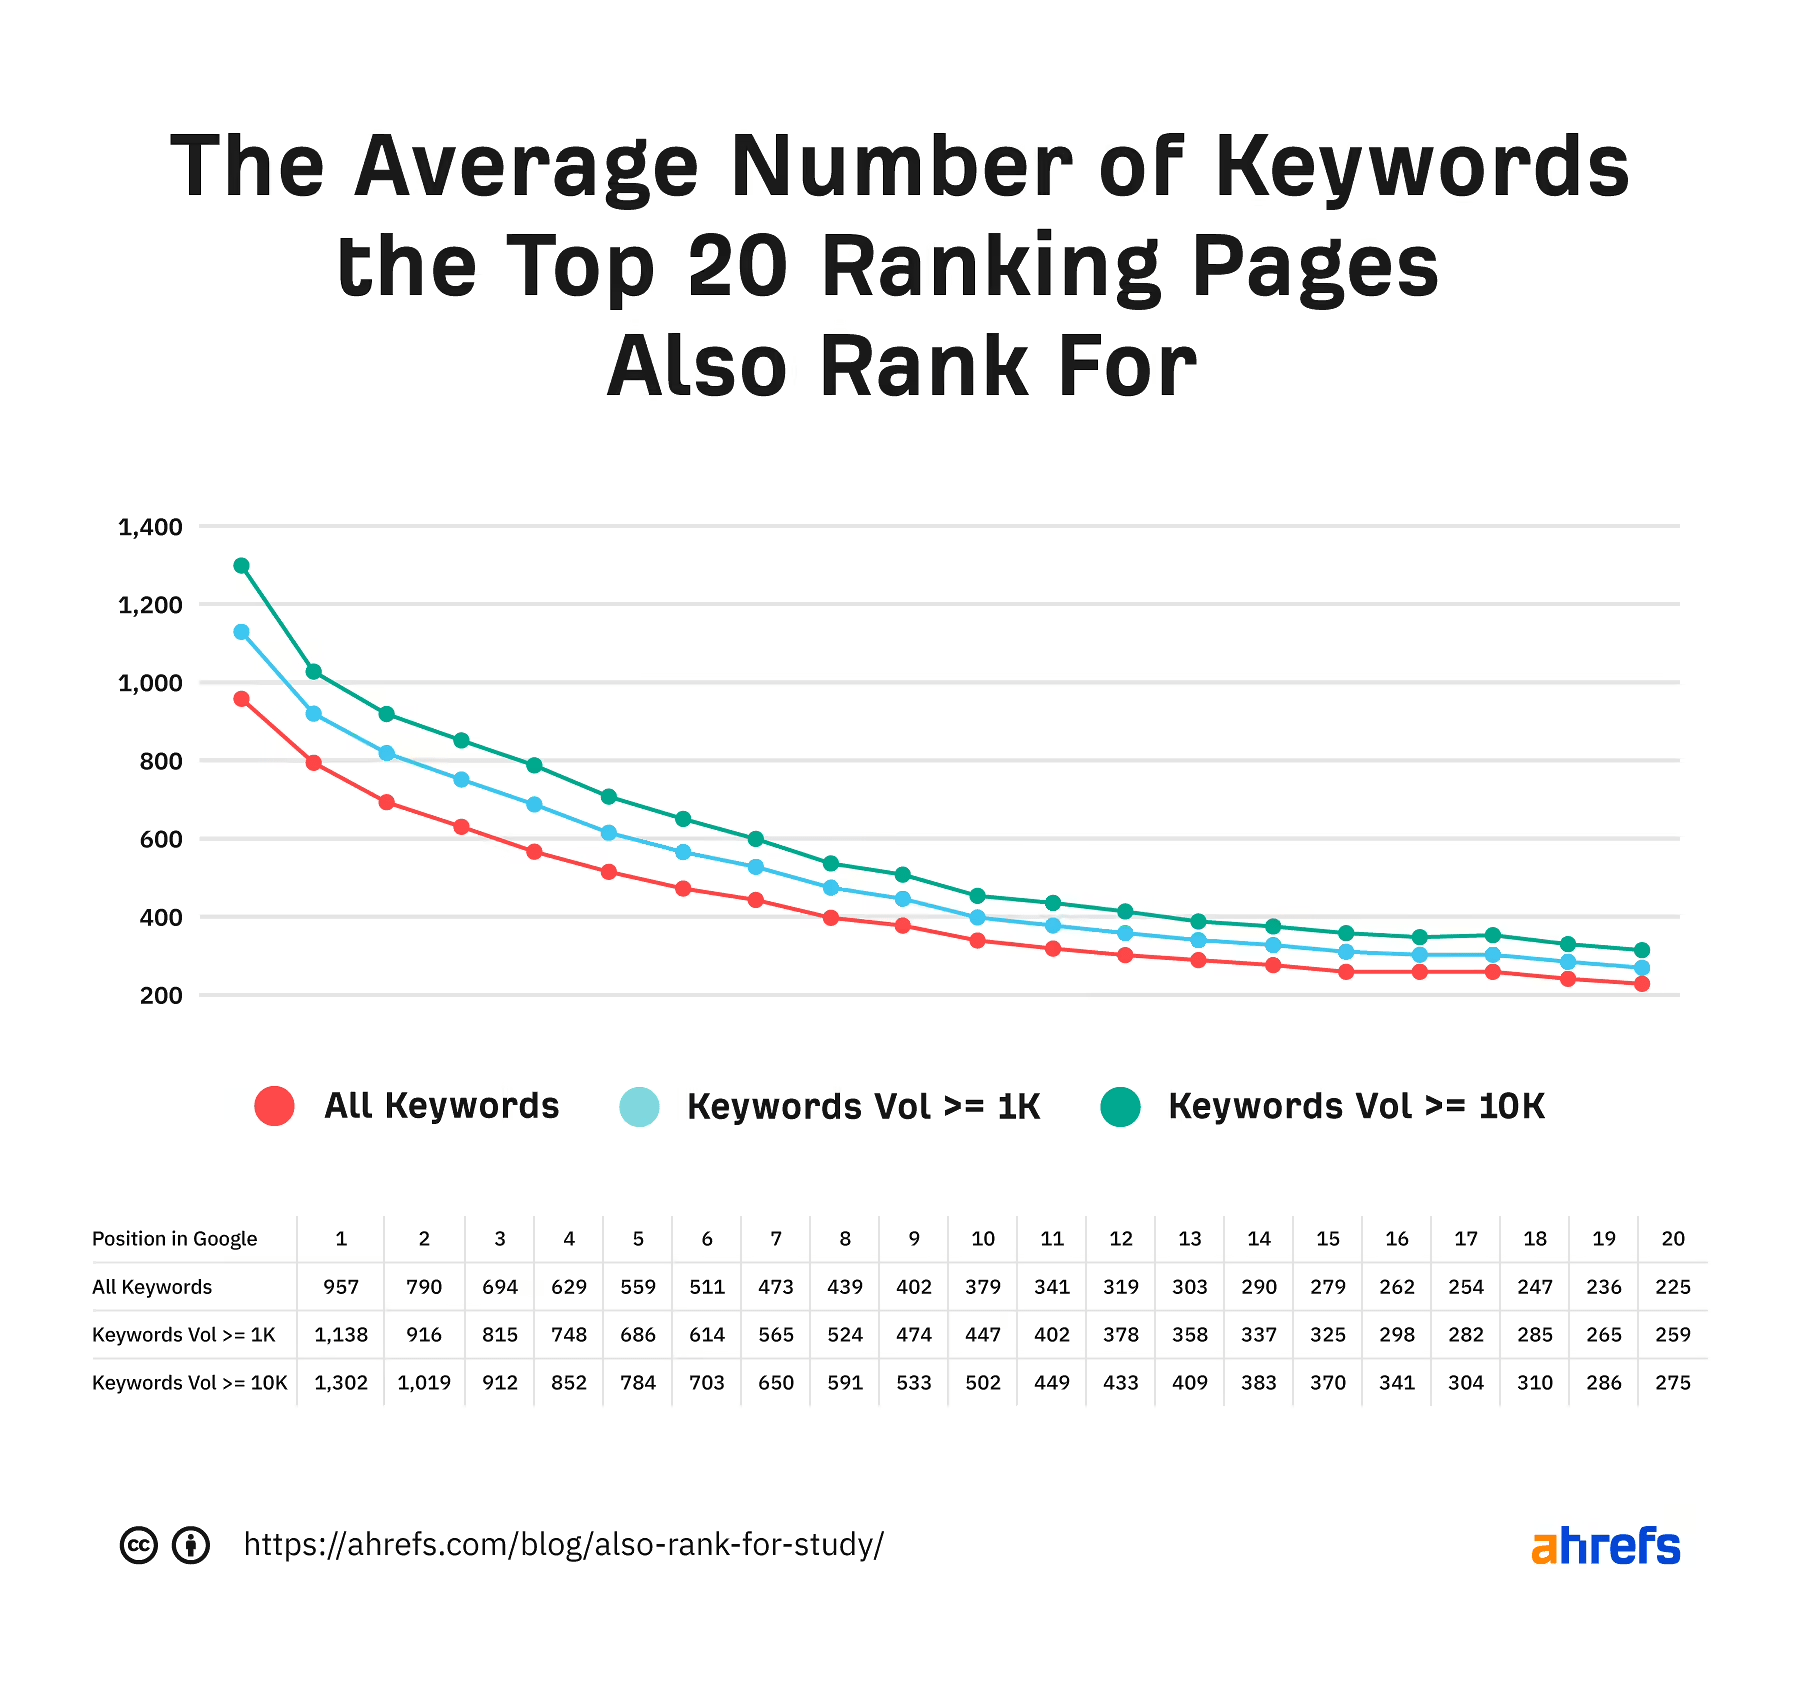 图表显示了排名前20位的网页的平均关键字数量